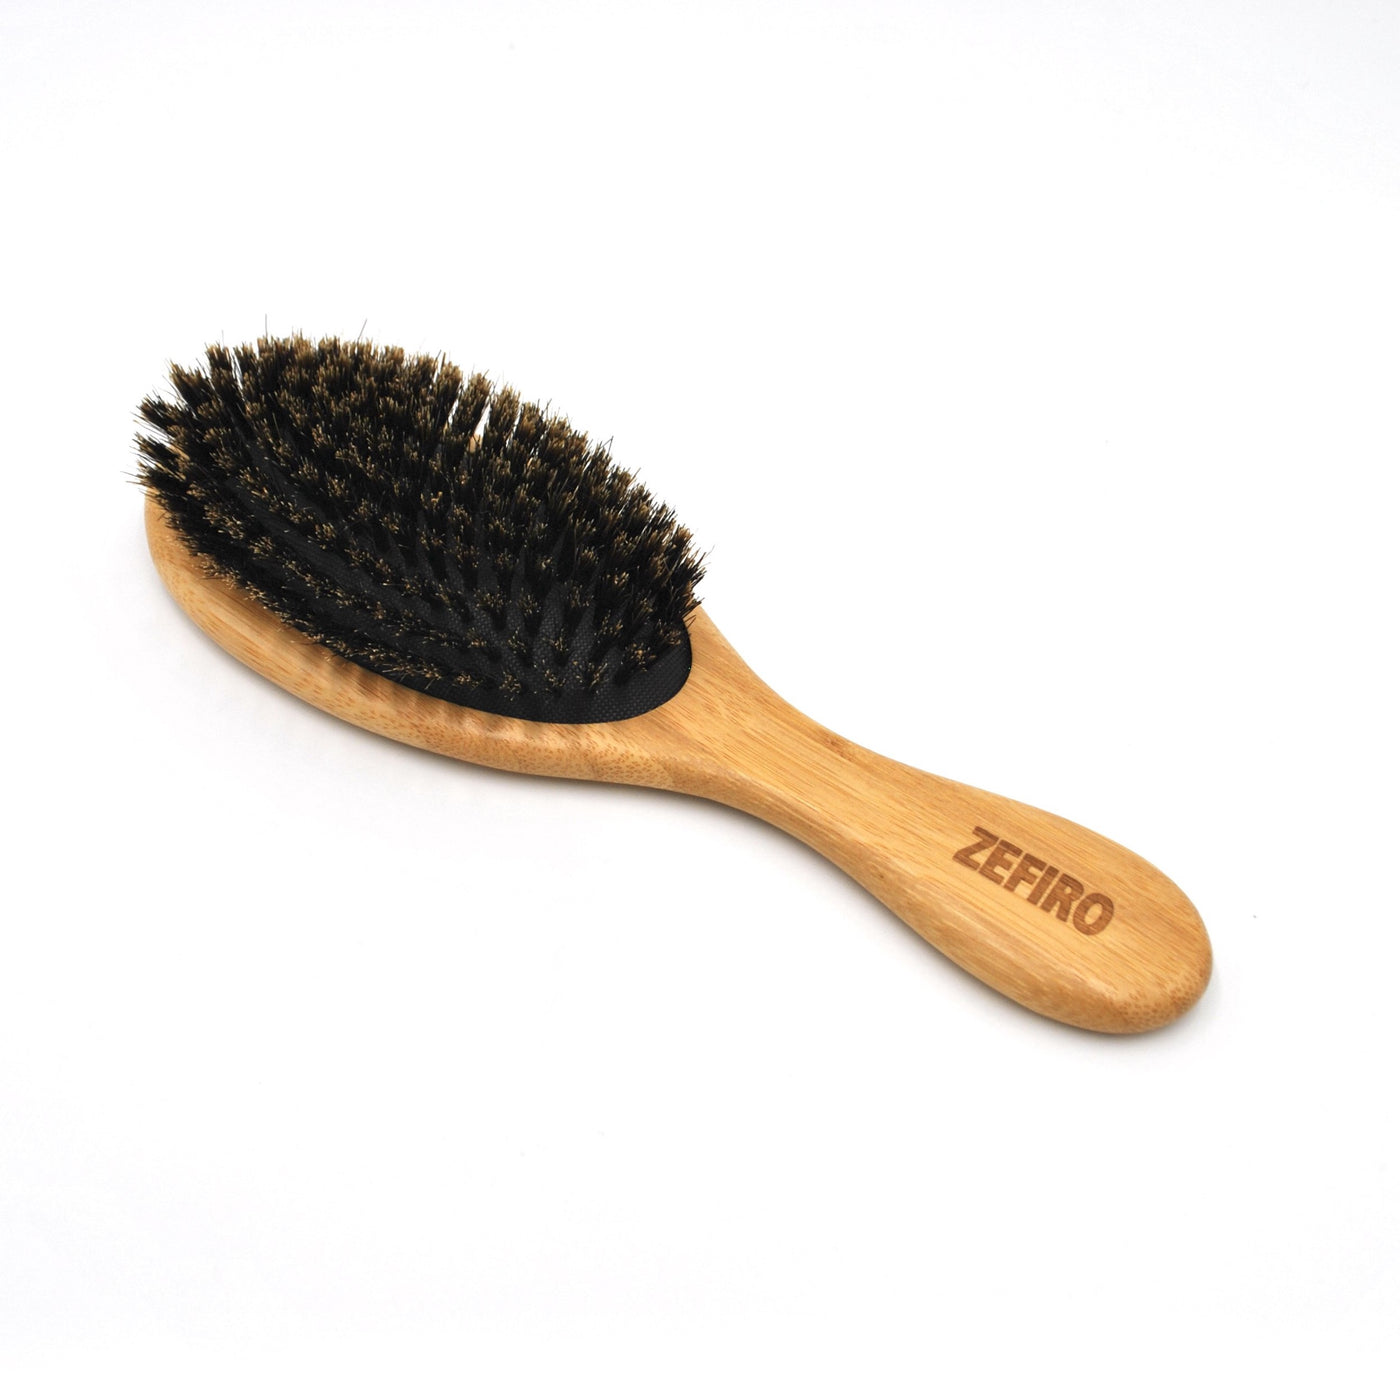 Zefiro's Bamboo Hair Brush - Soft Bristle